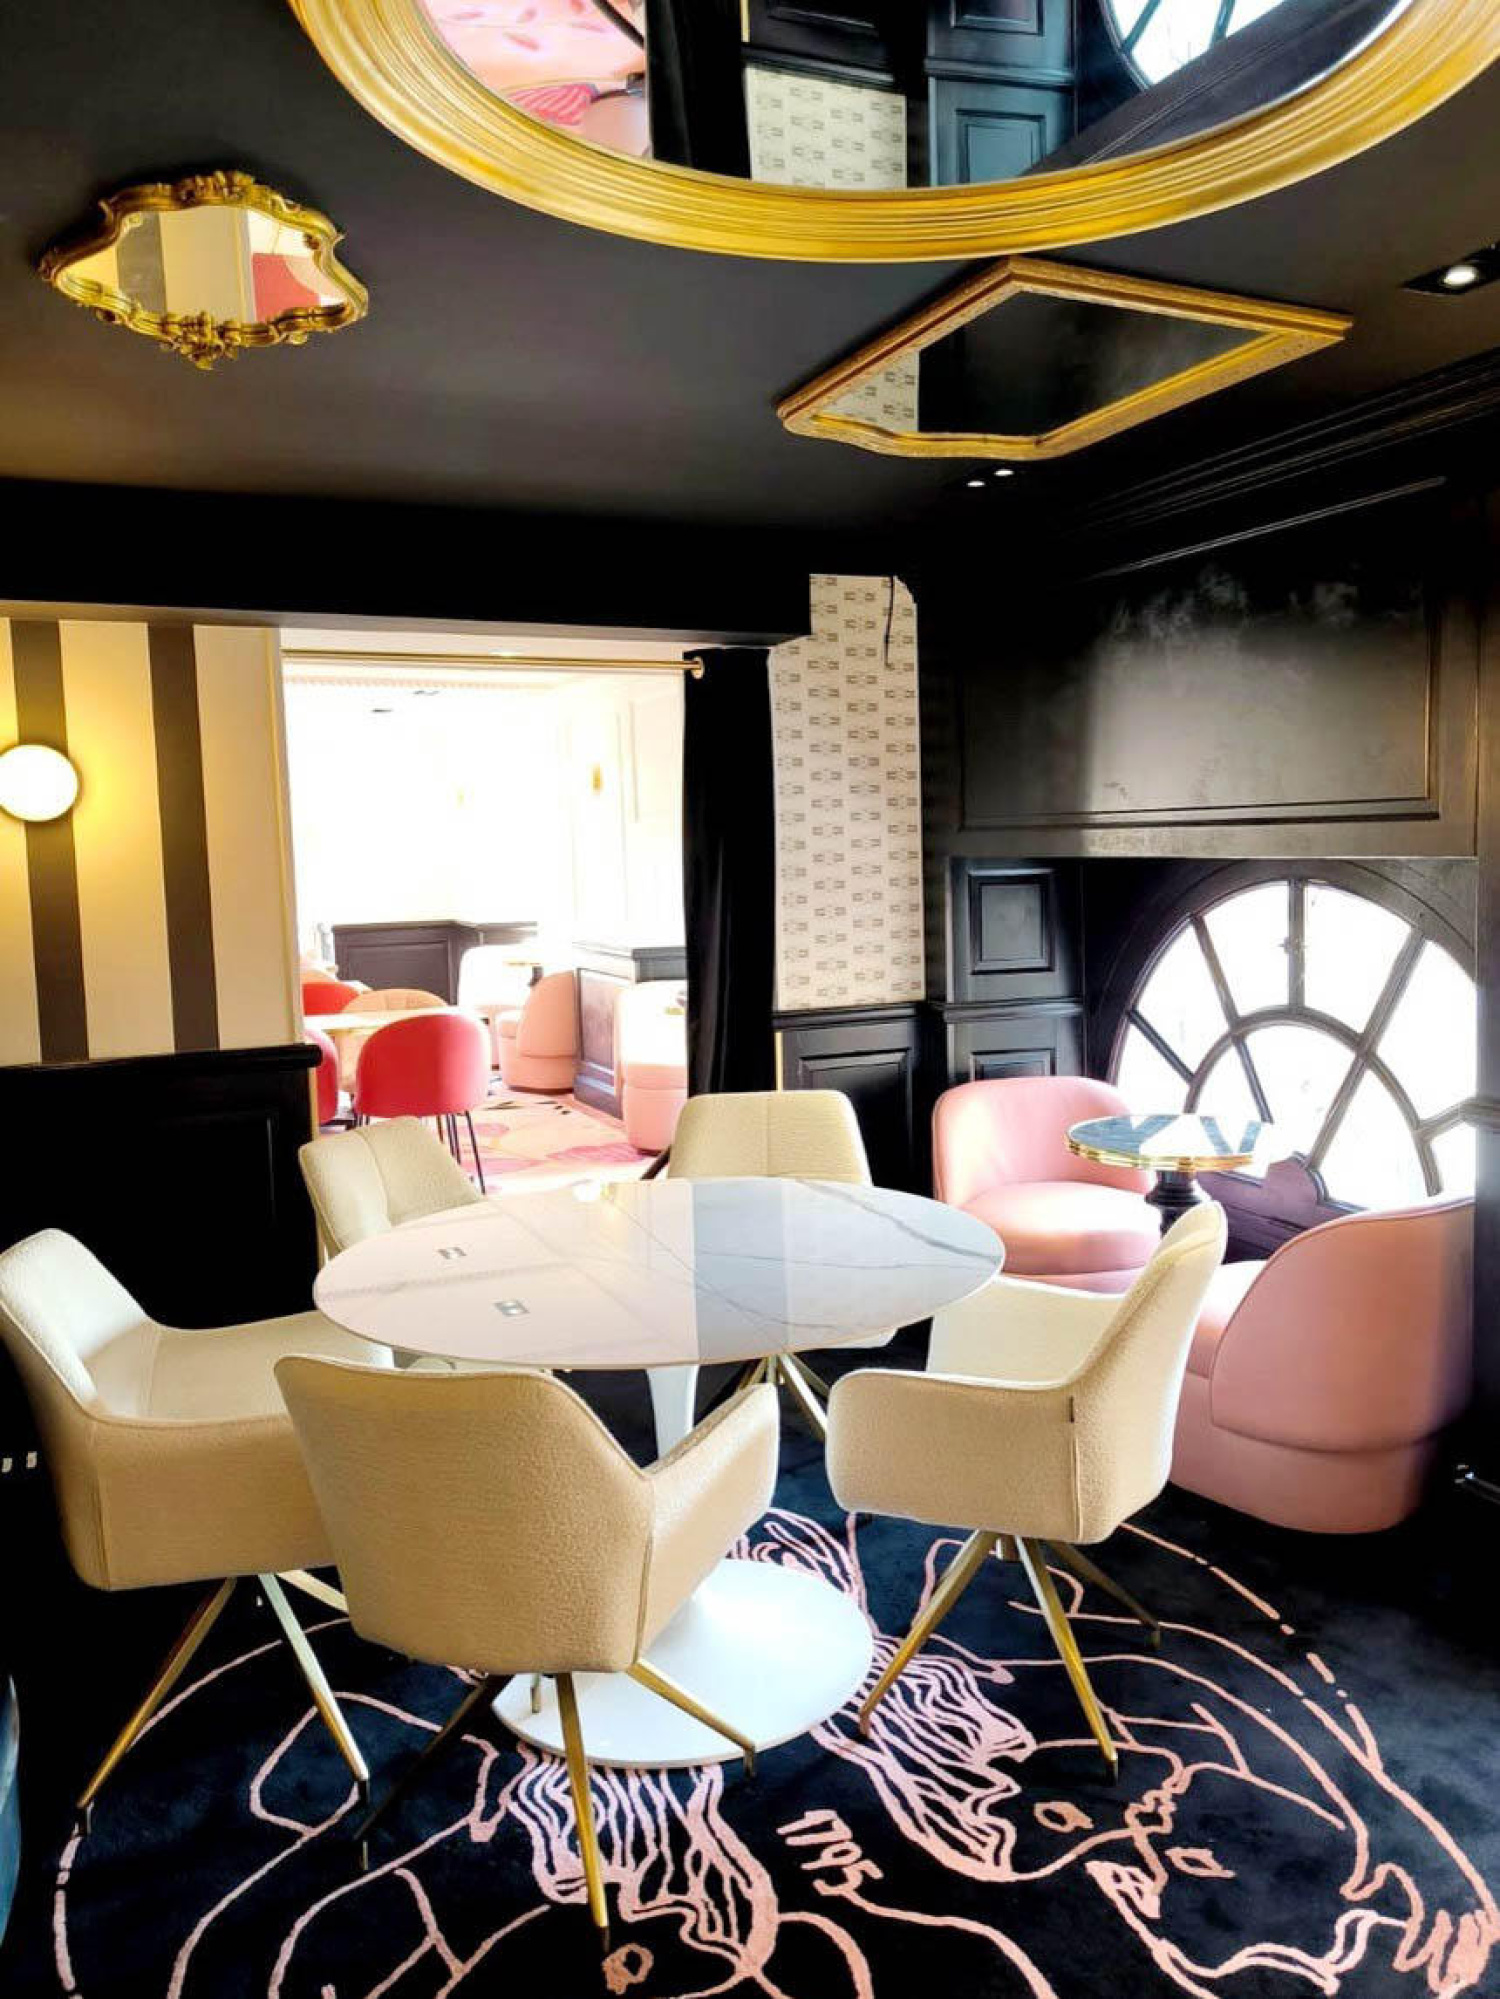 RESTAURANT LE GRAND CAFÉ FOY À NANCY - IBFOR - Your design shop